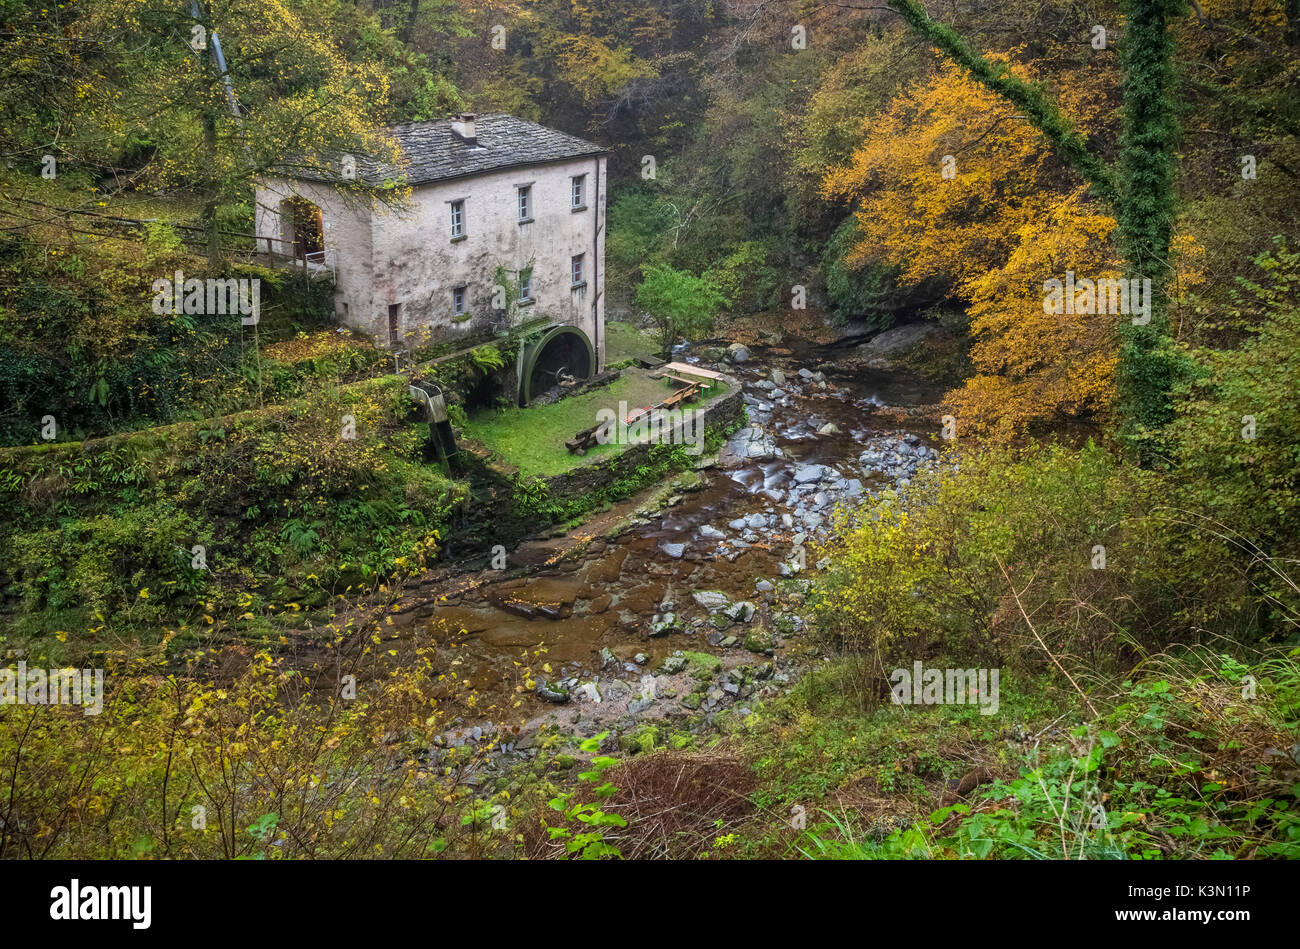 Autumn at Bruzella mill, Muggio Valley, Mendrisio District, Canton Ticino, Switzerland. Stock Photo